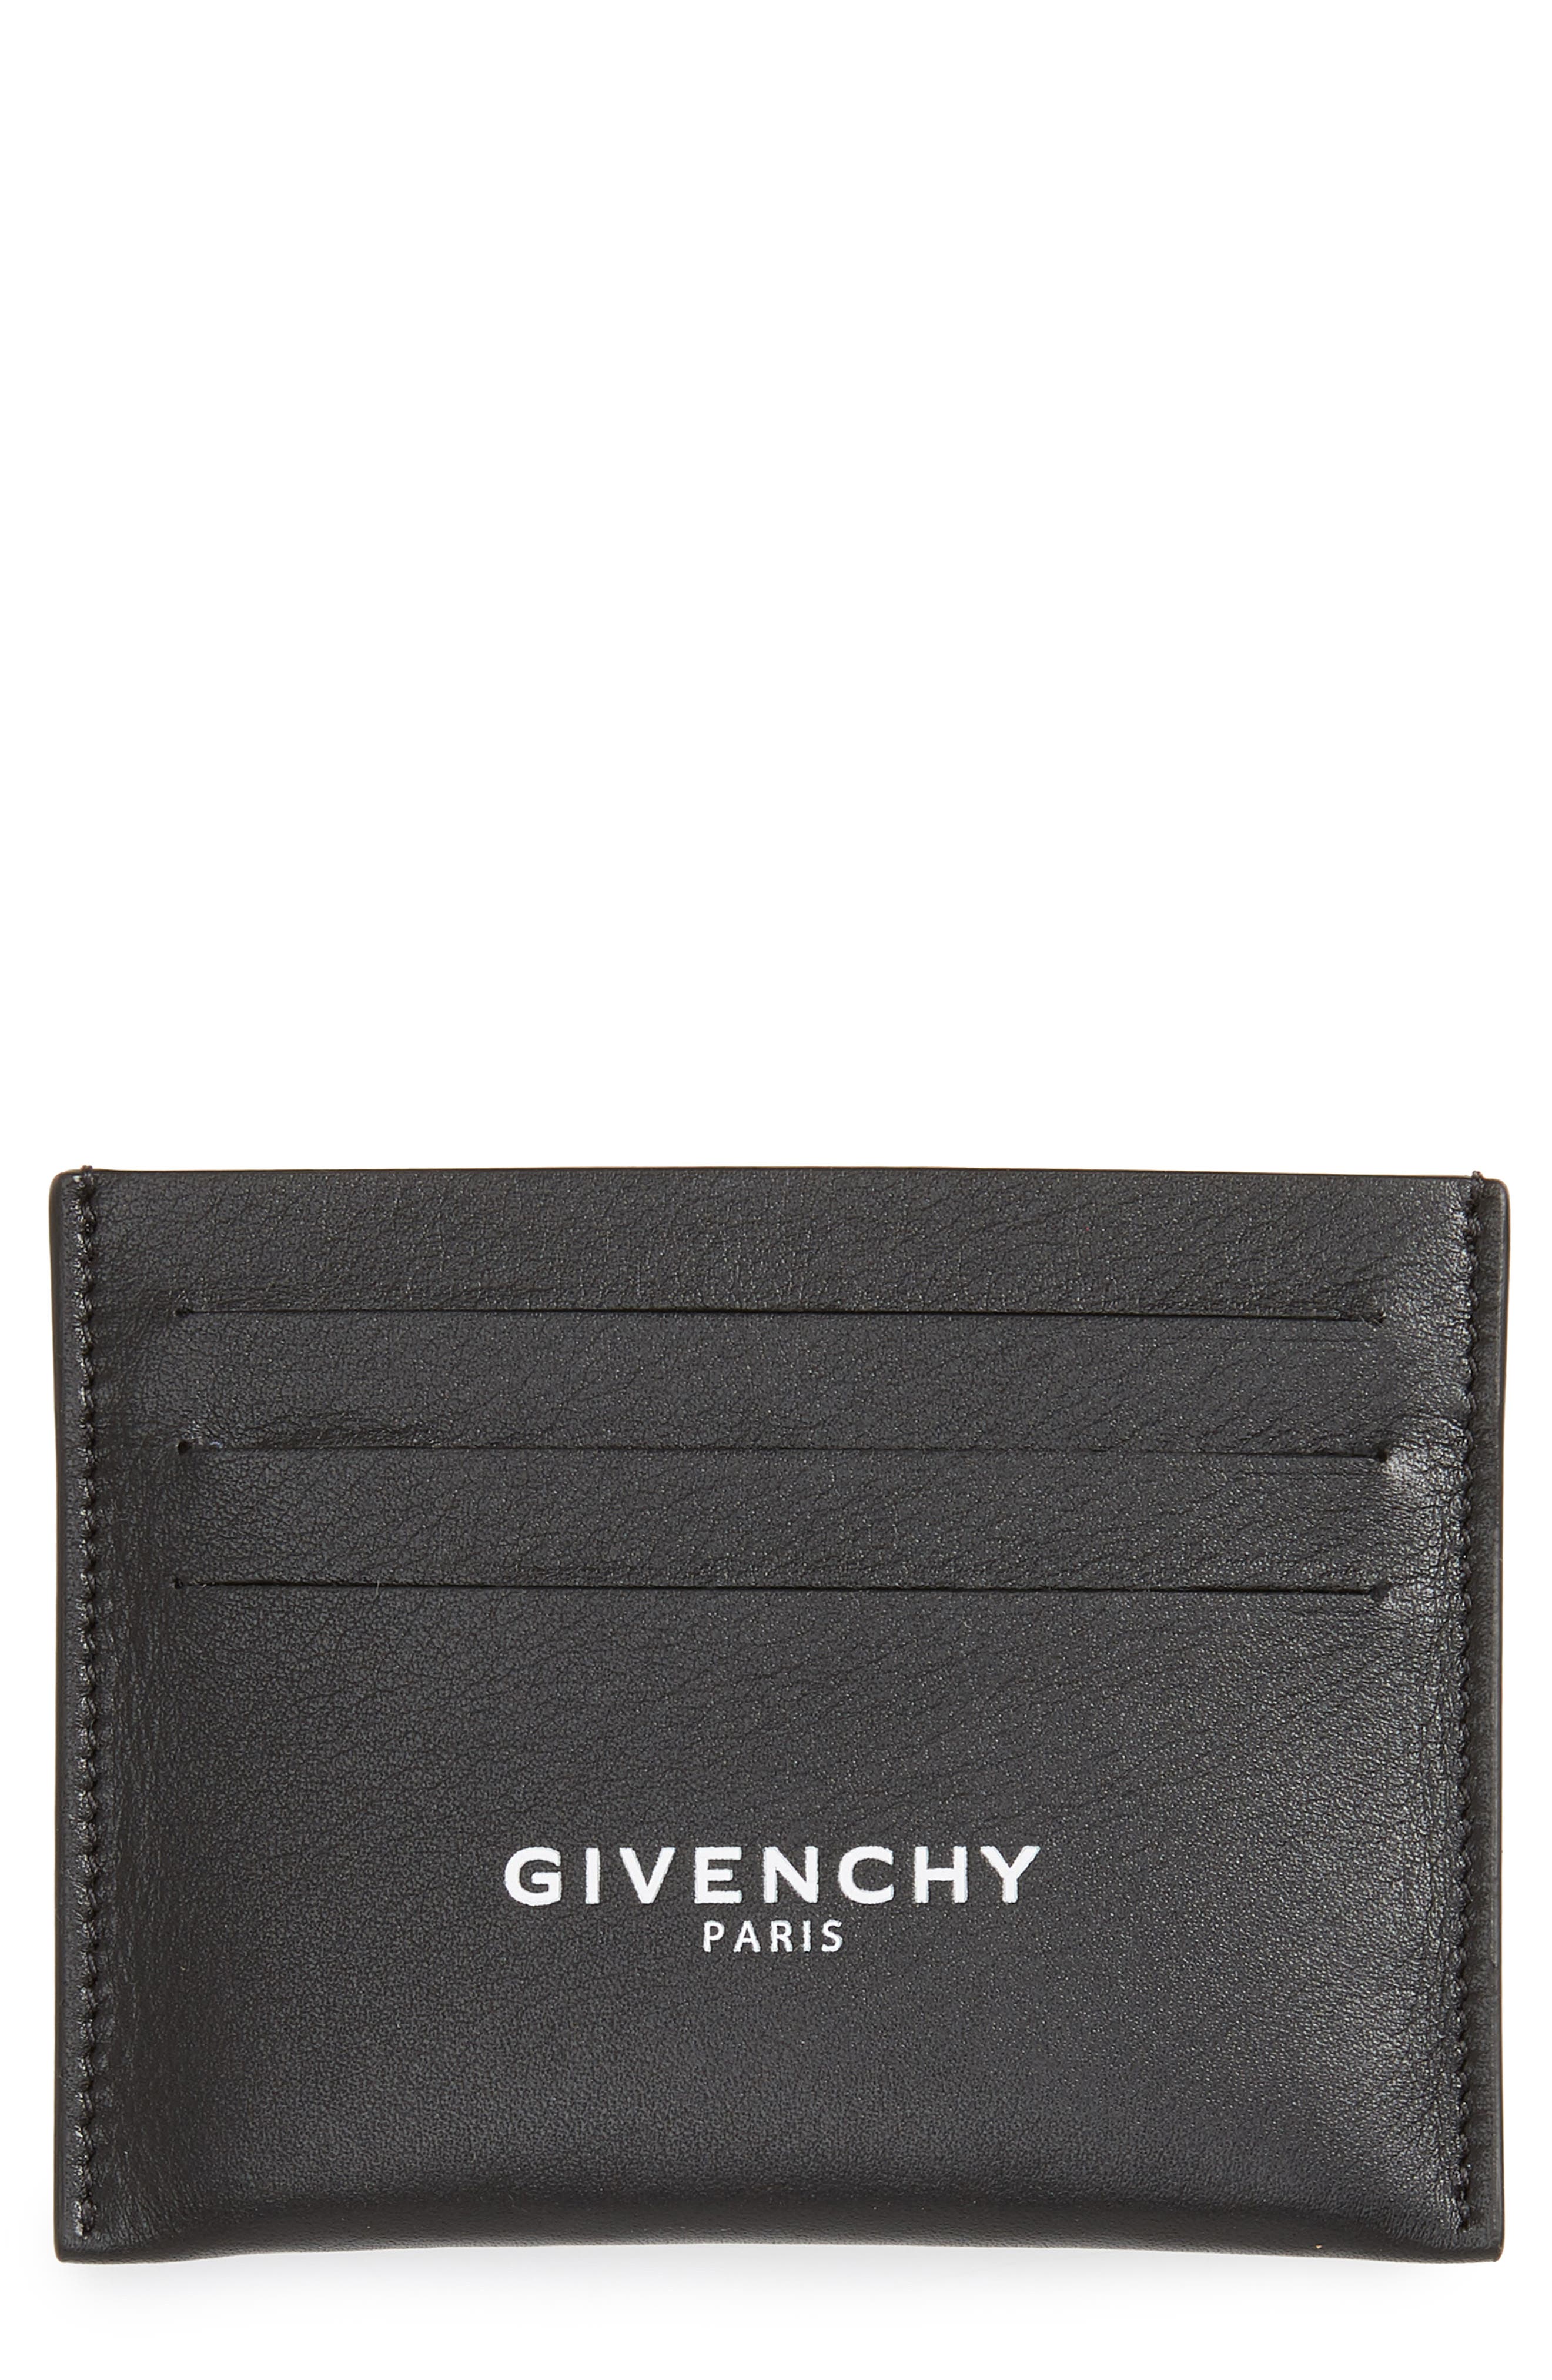 givenchy wallet mens